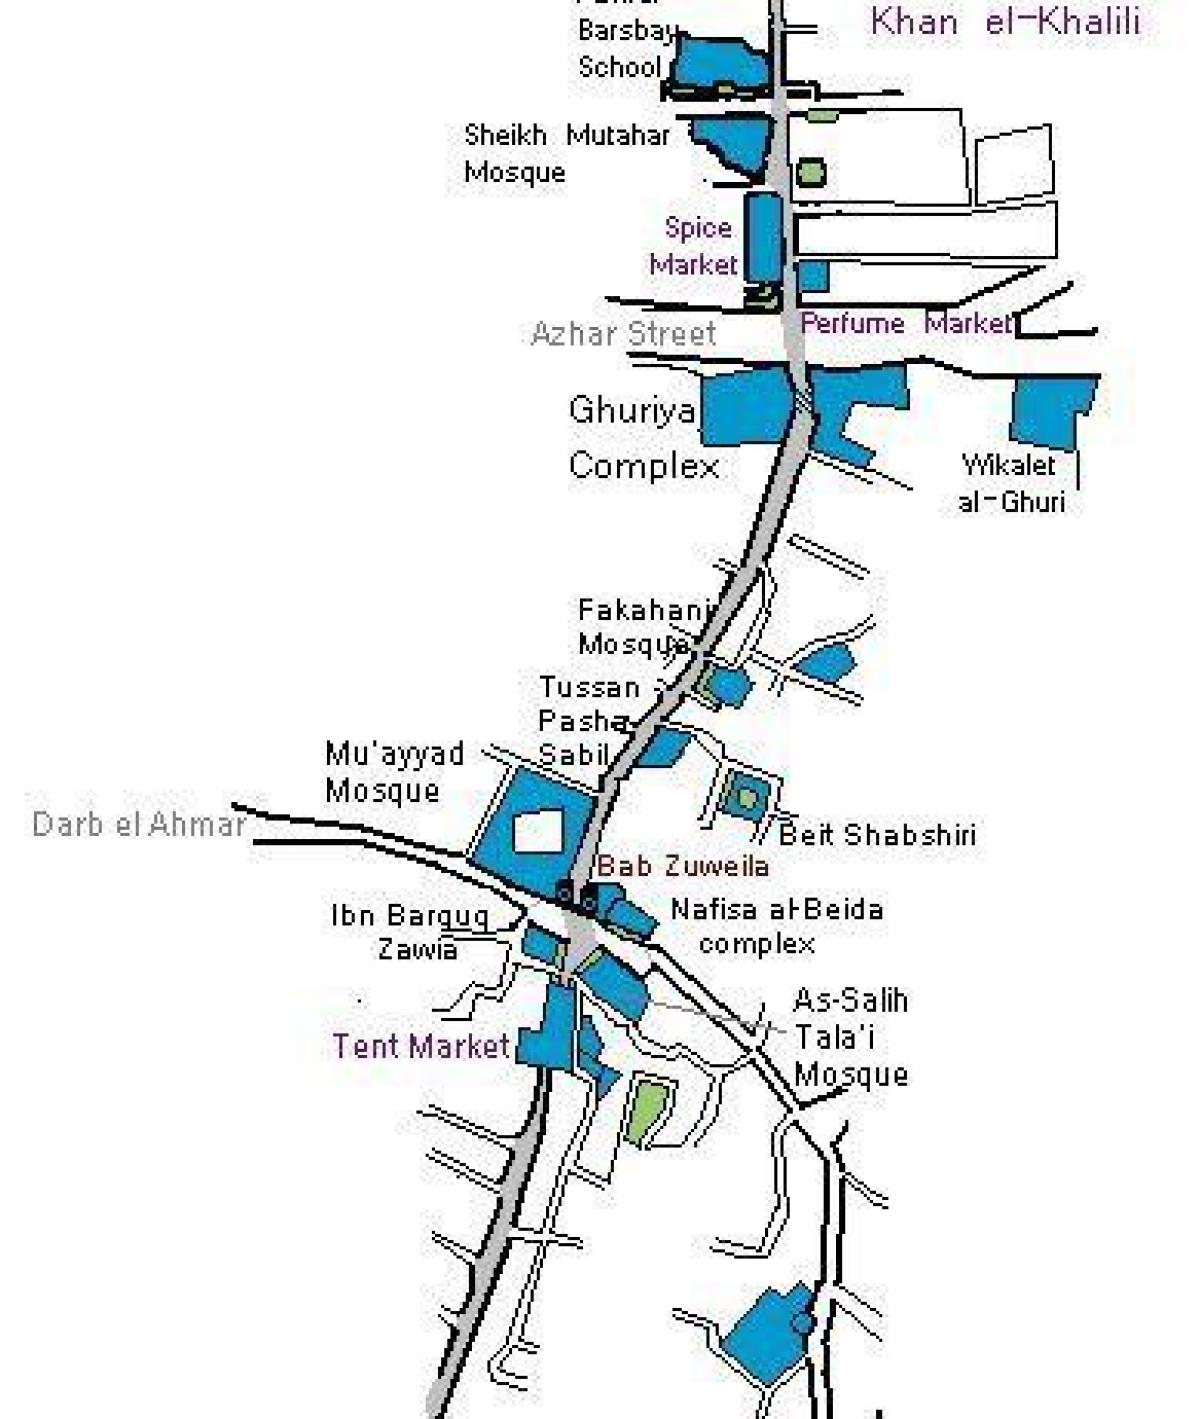 ხან el khalili ბაზარი რუკა